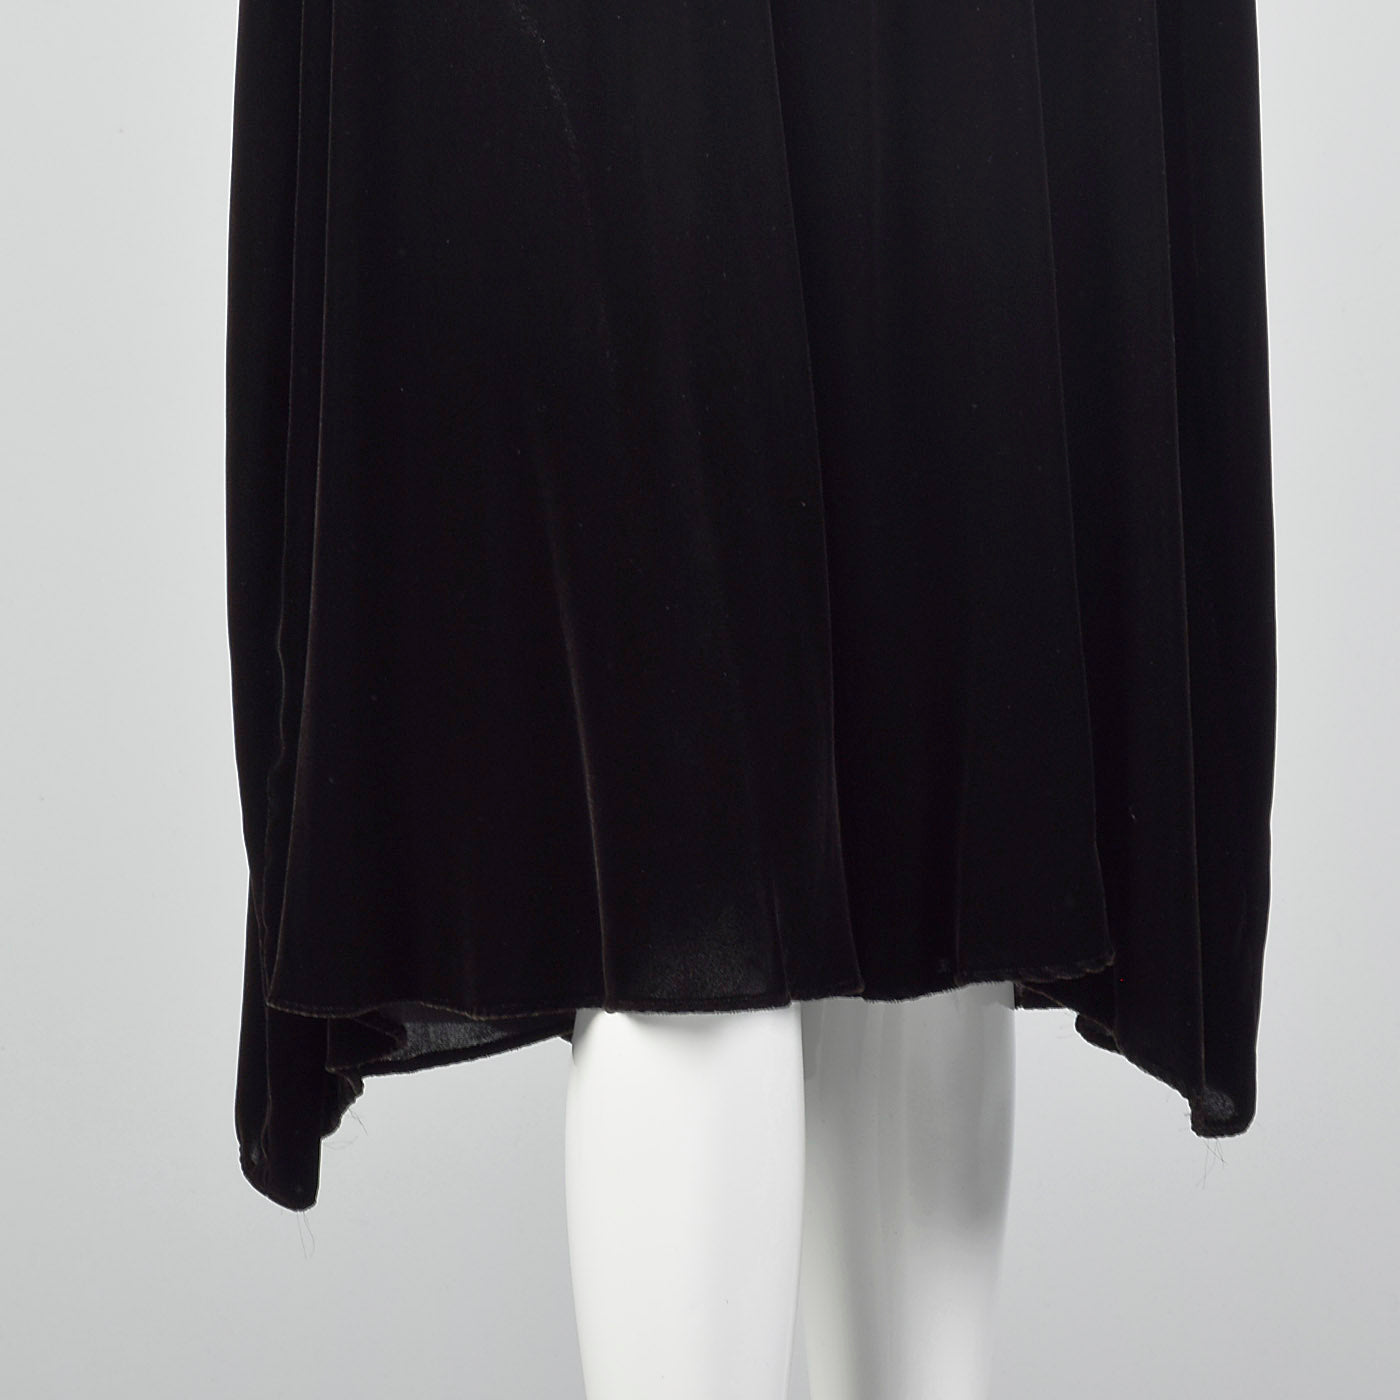 1940s Black Velvet Halter Dress with Ruched Bodice